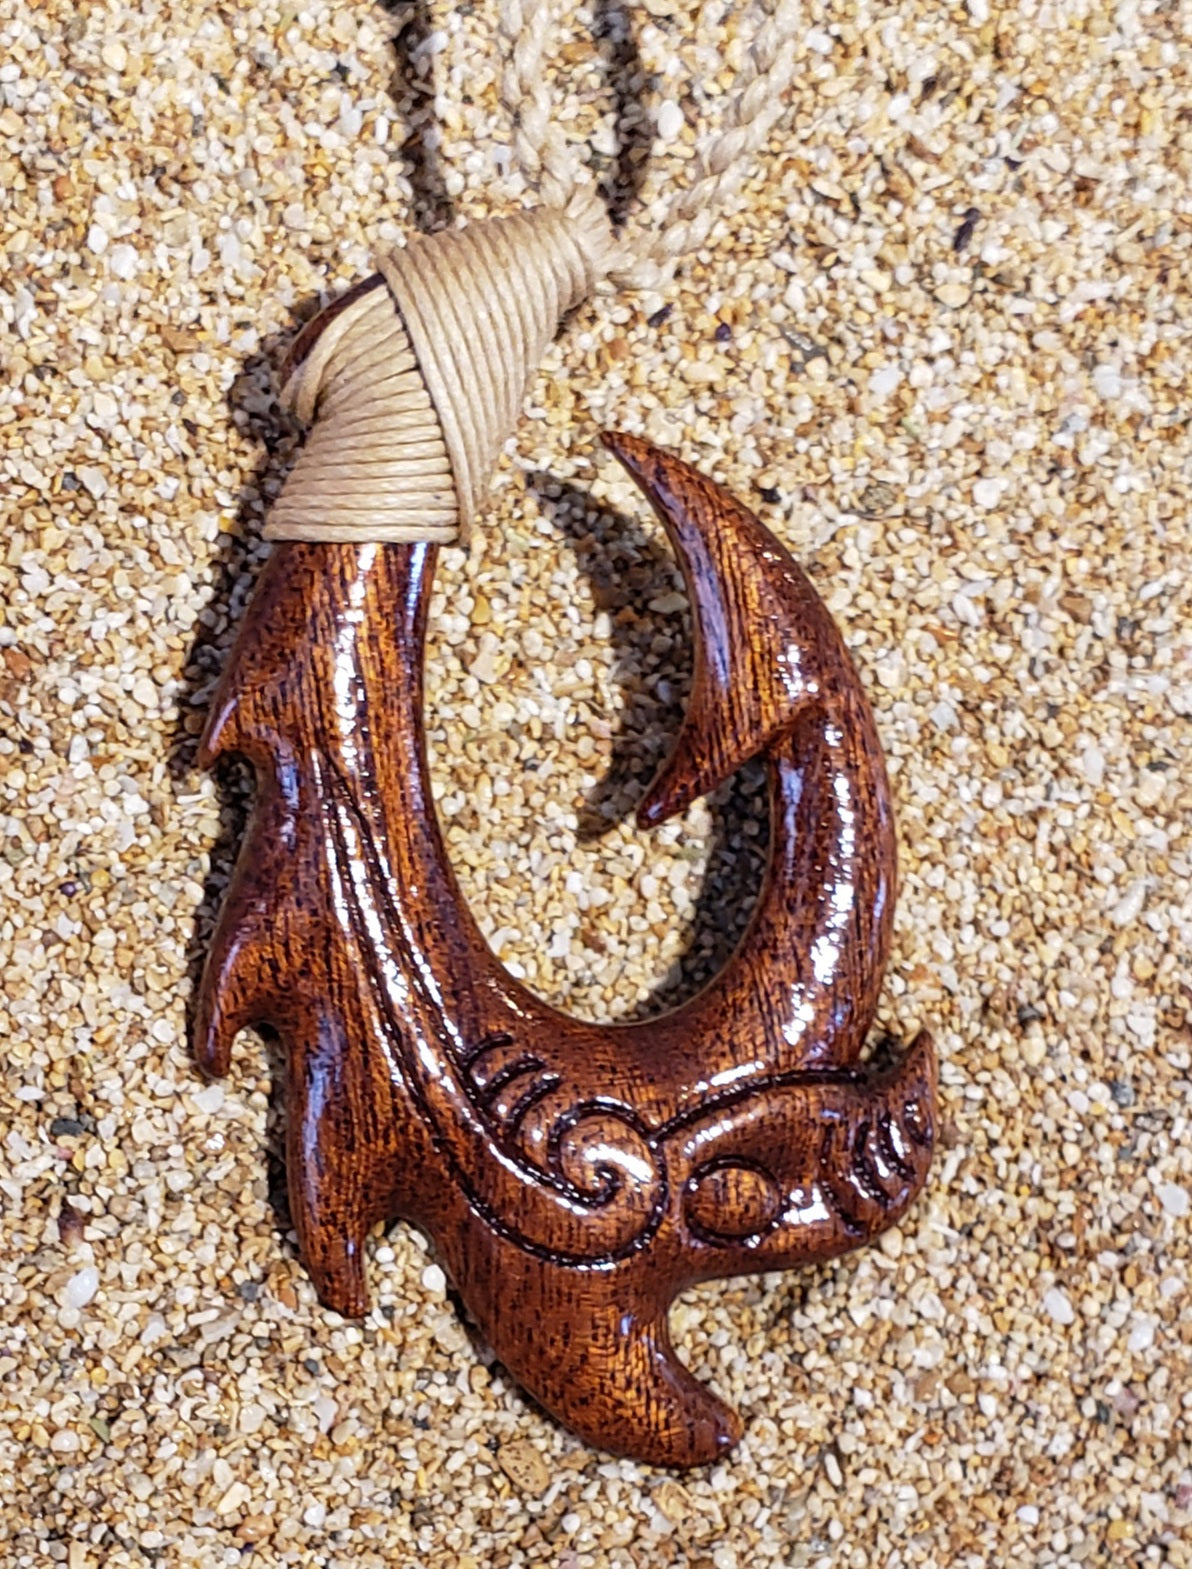 Koa Wood Hook (Dragon) 32" long Adjustable Cord